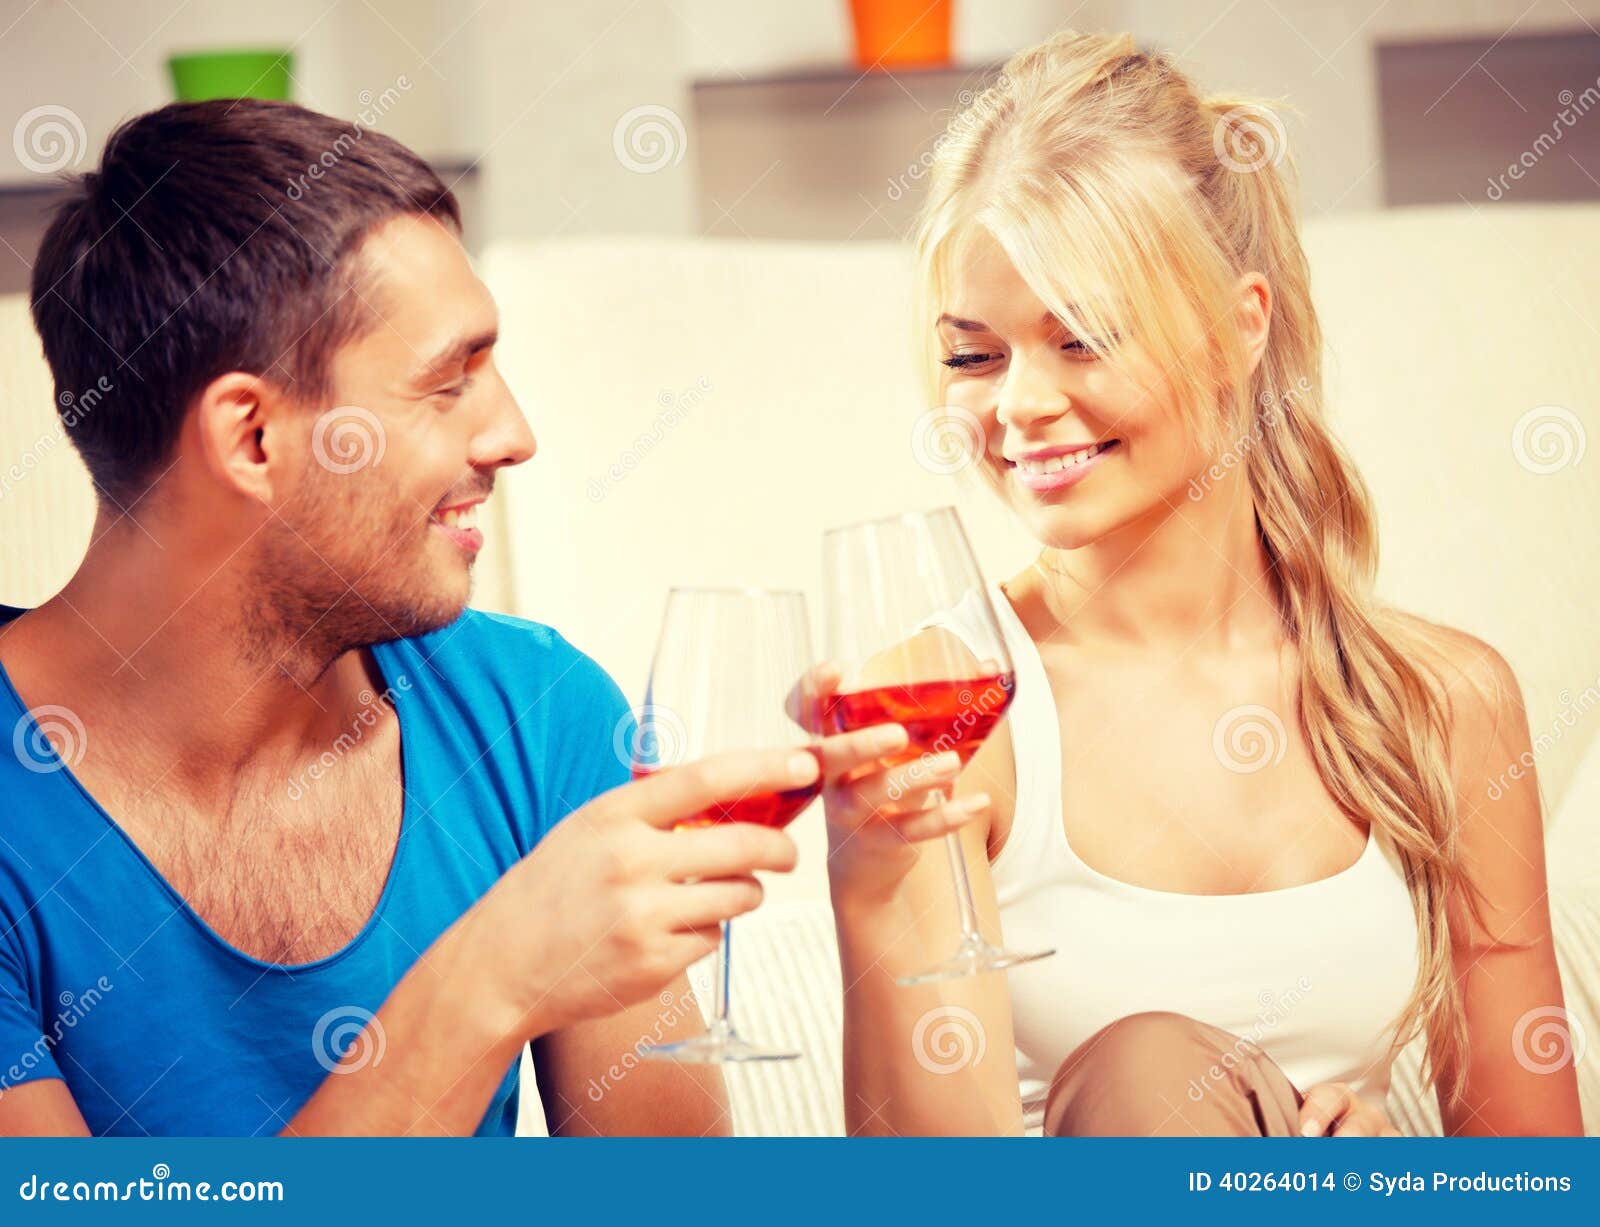 Любовницы и подруги мужа. Счастливая пьющая парочка фото. Мужчина и женщина выпивают романтика. Фото пары с вином. Если пара пьёт вместе.